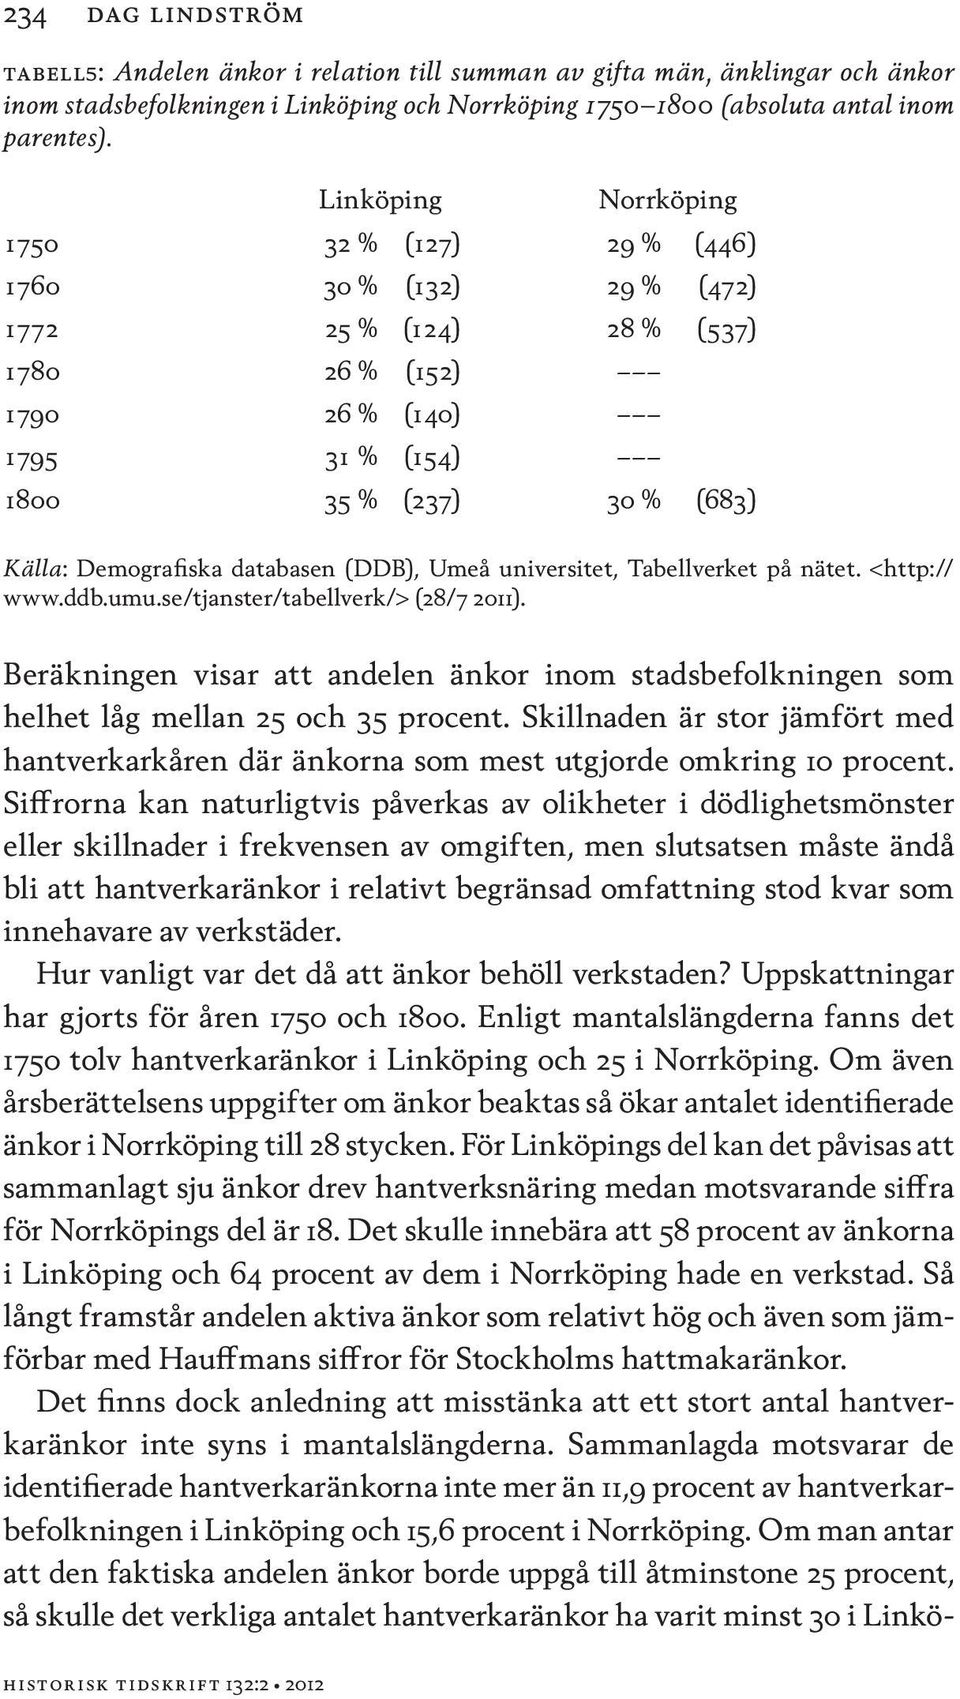 databasen (DDB), Umeå universitet, Tabellverket på nätet. <http:// www.ddb.umu.se/tjanster/tabellverk/> (28/7 2011).